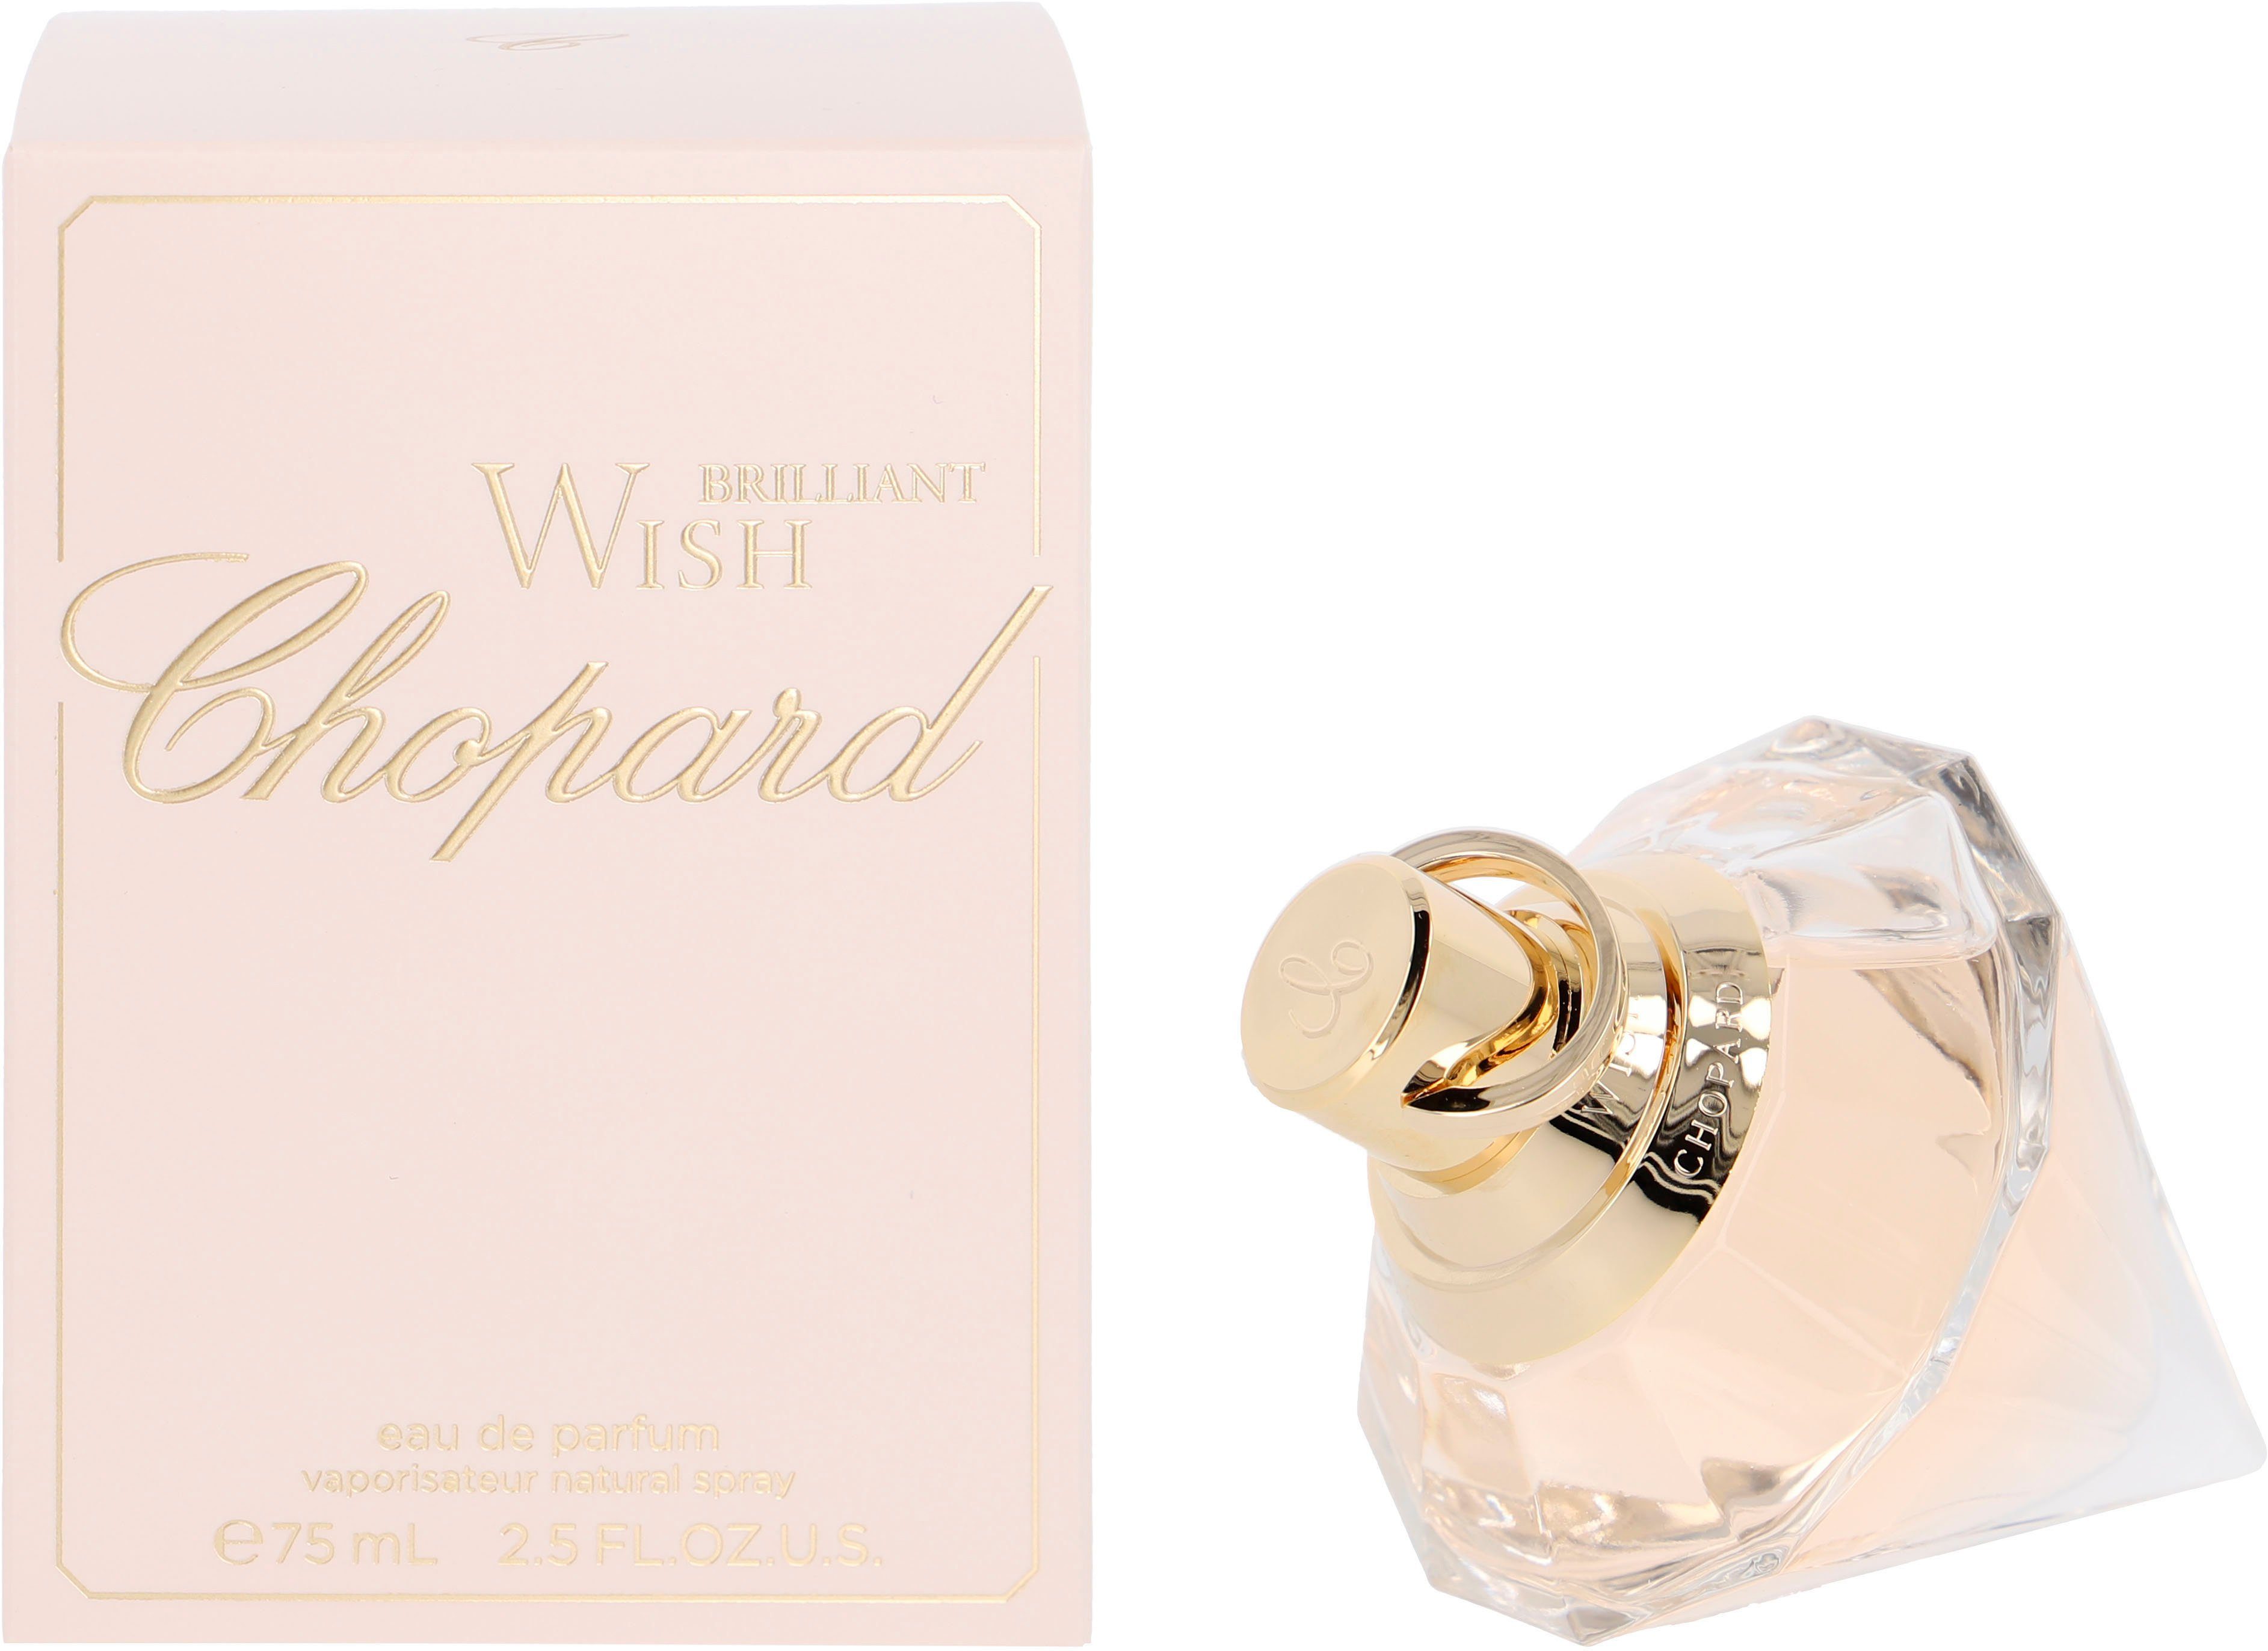 Eau Brilliant Chopard Parfum Wish de